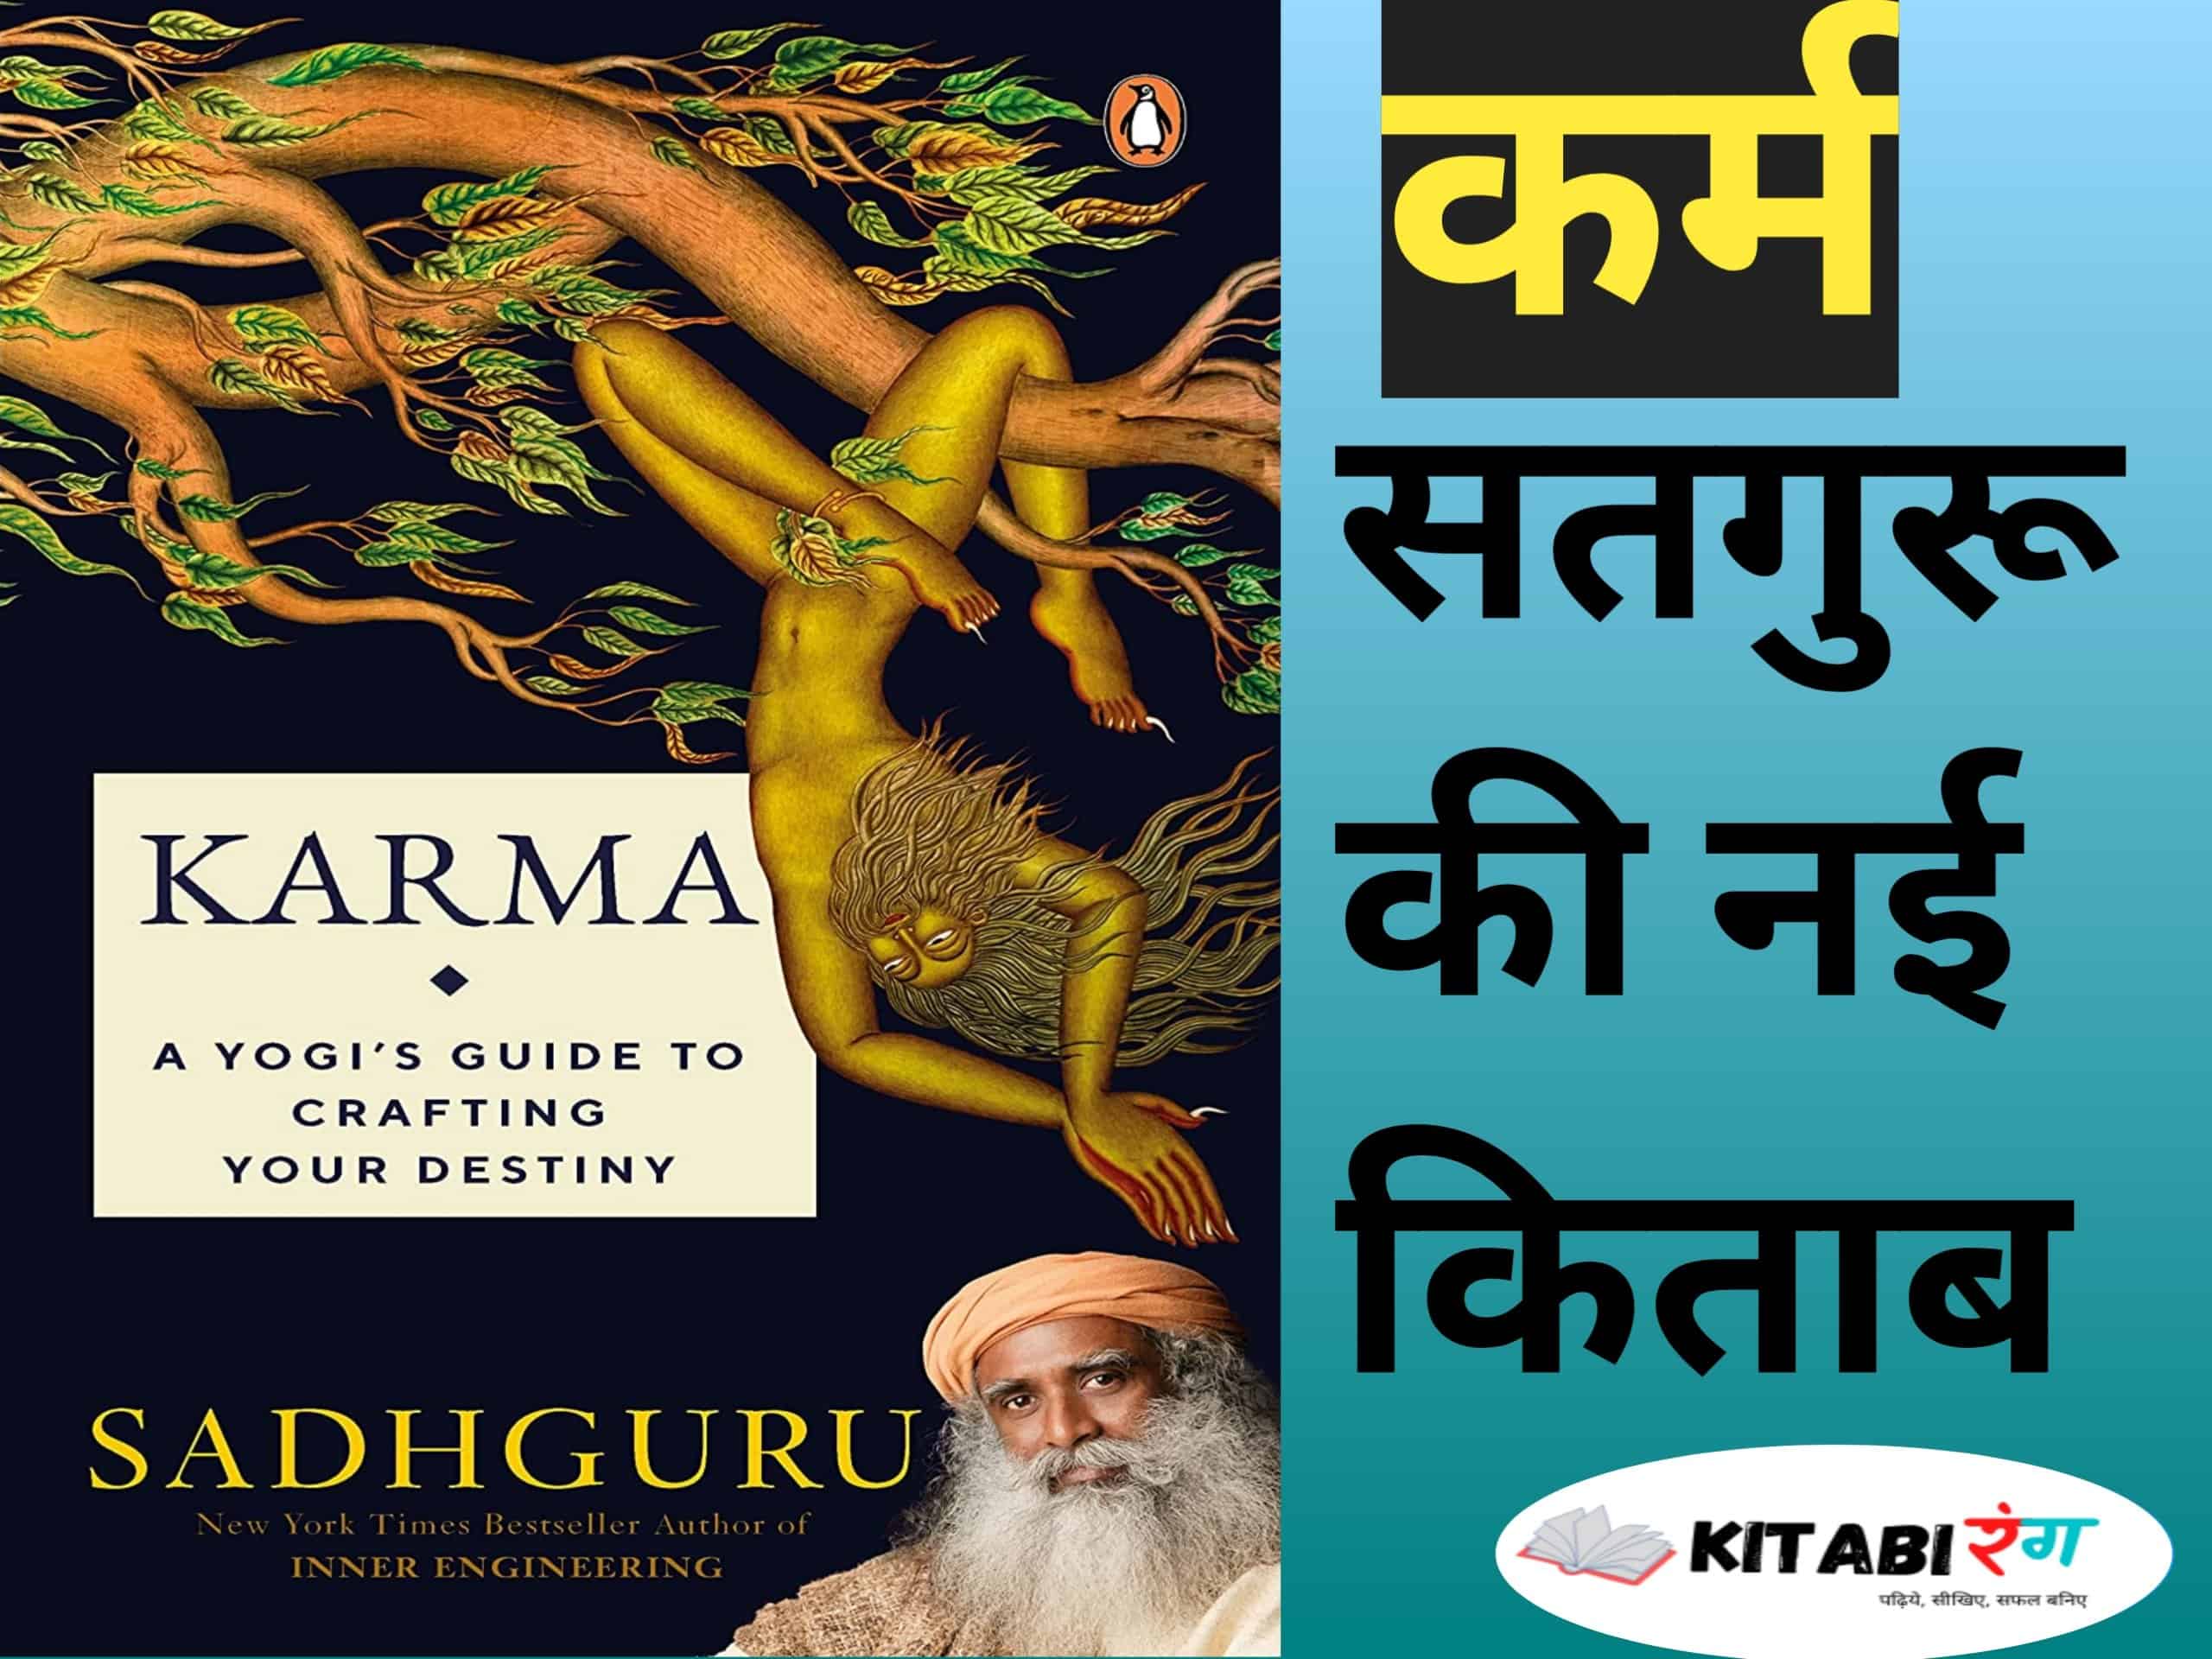 Karma Book Review In Hindi|Sadhguru